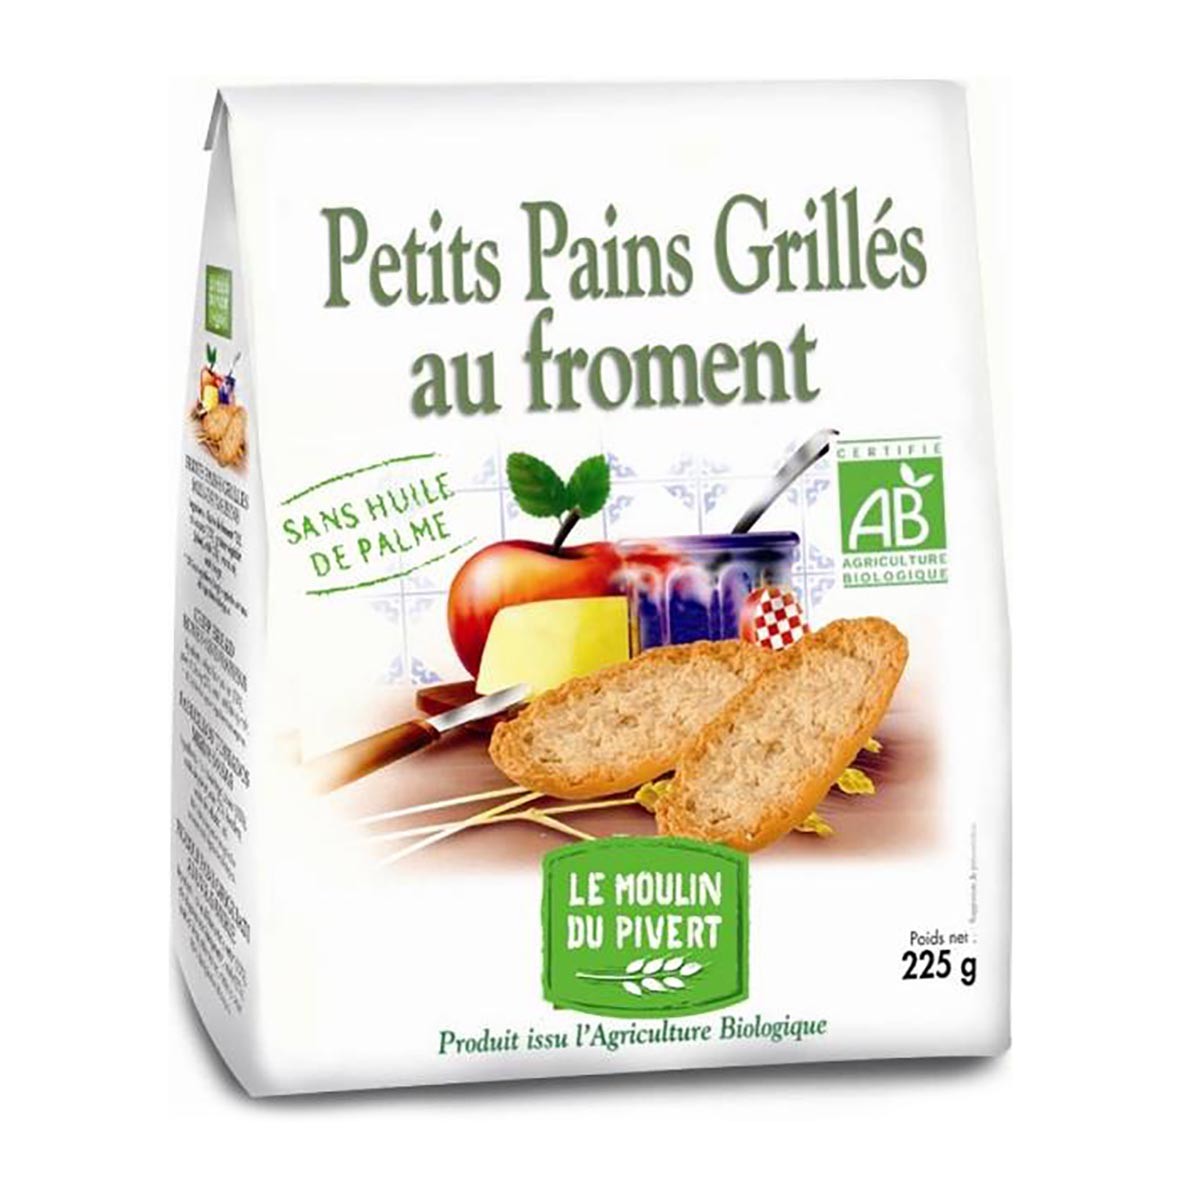 Le Moulin du Pivert - Petits pains grillés froment 225g bio